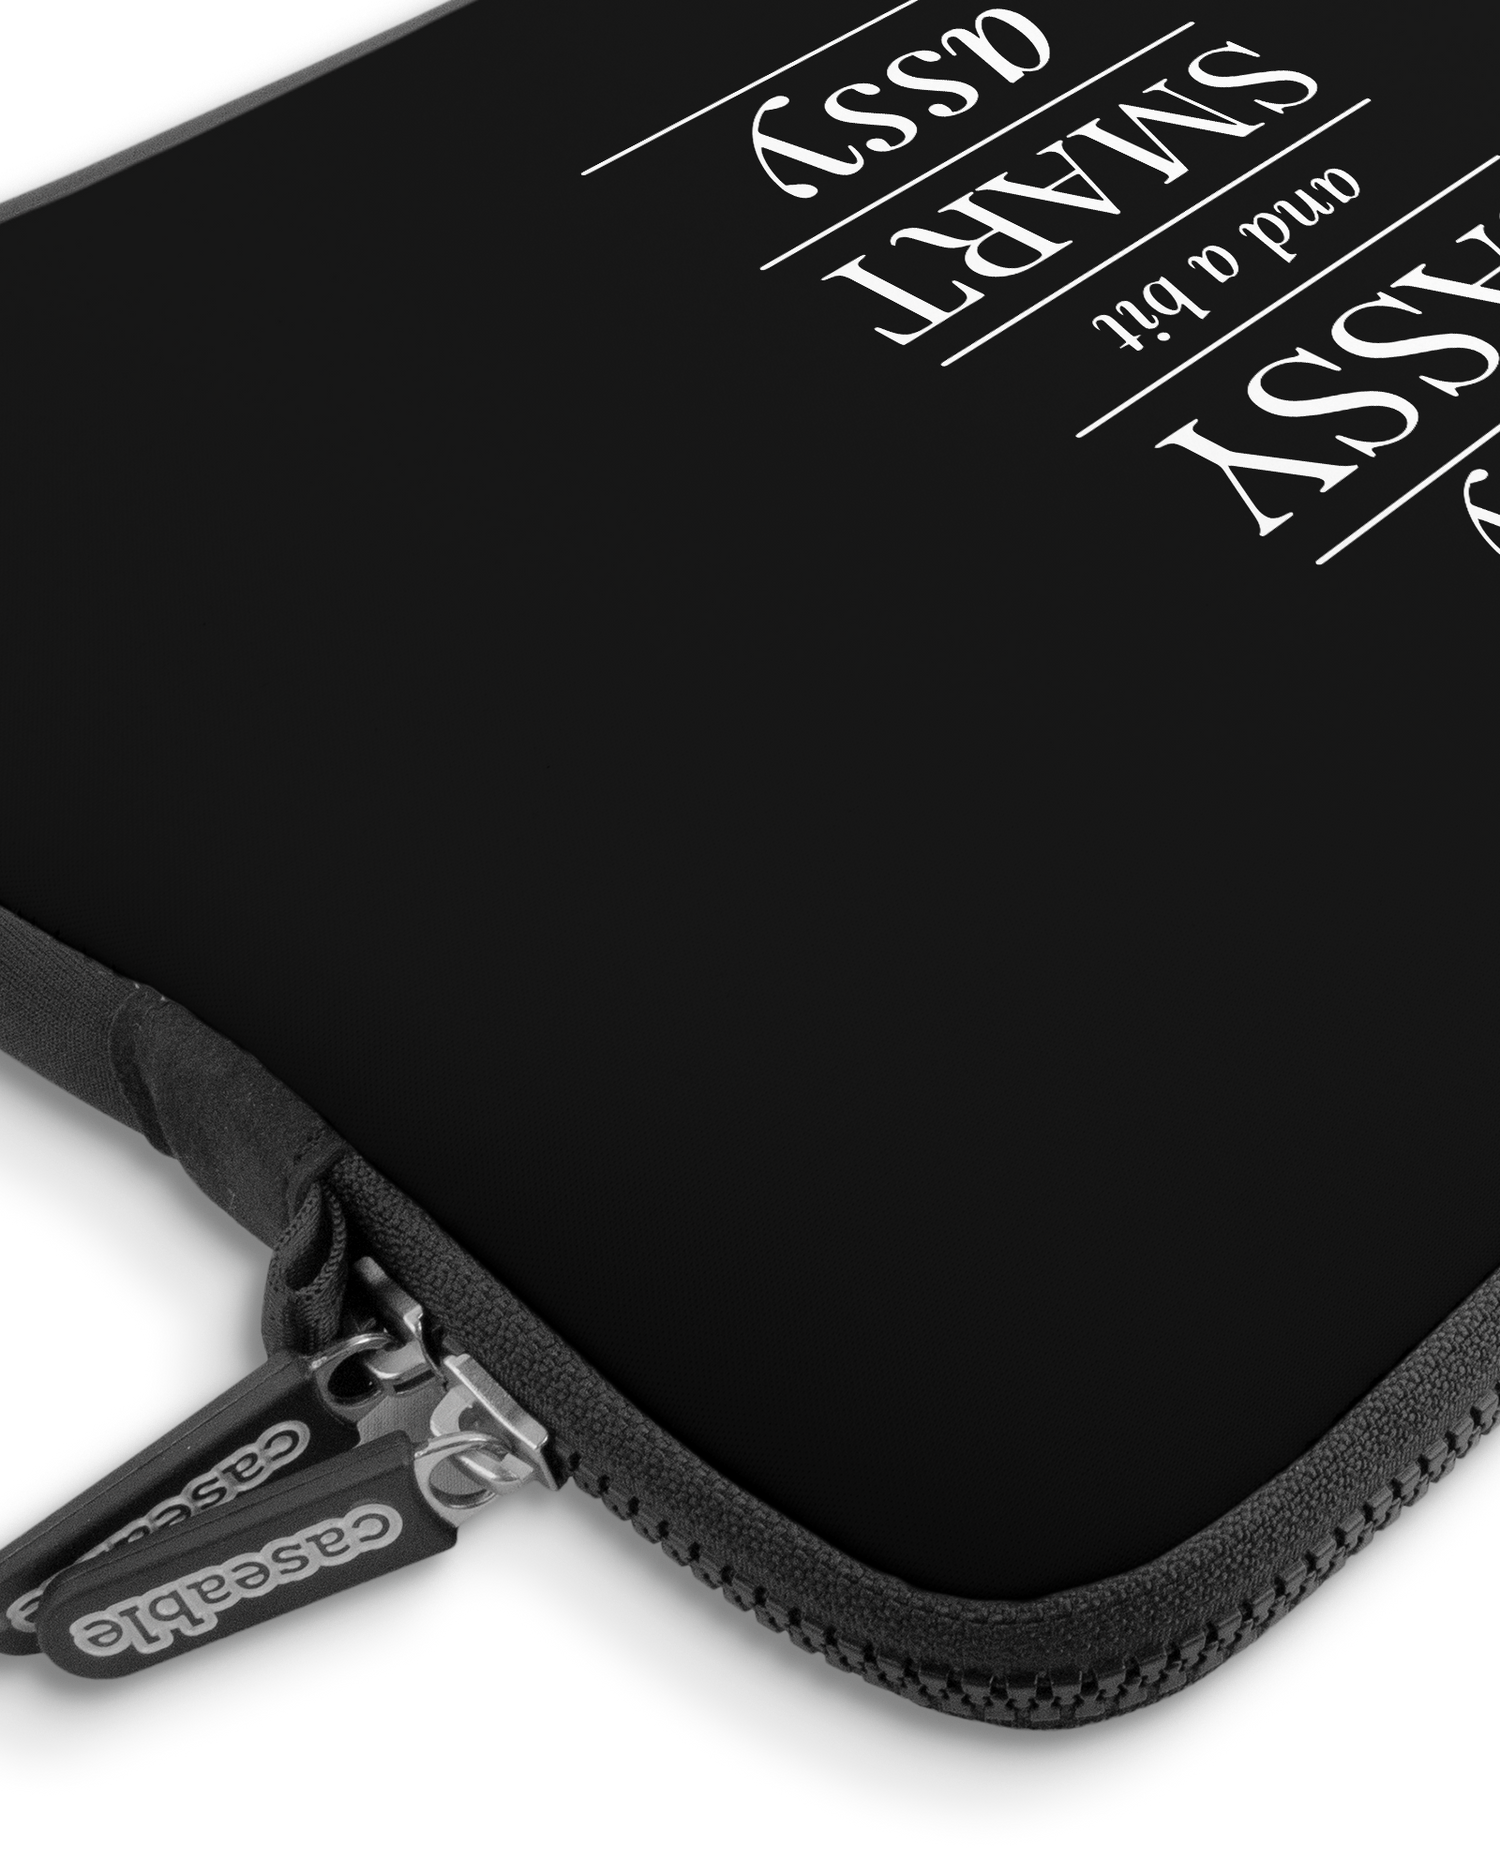 Classy Sassy Premium Laptoptasche 13-14 Zoll mit Gerät im Inneren